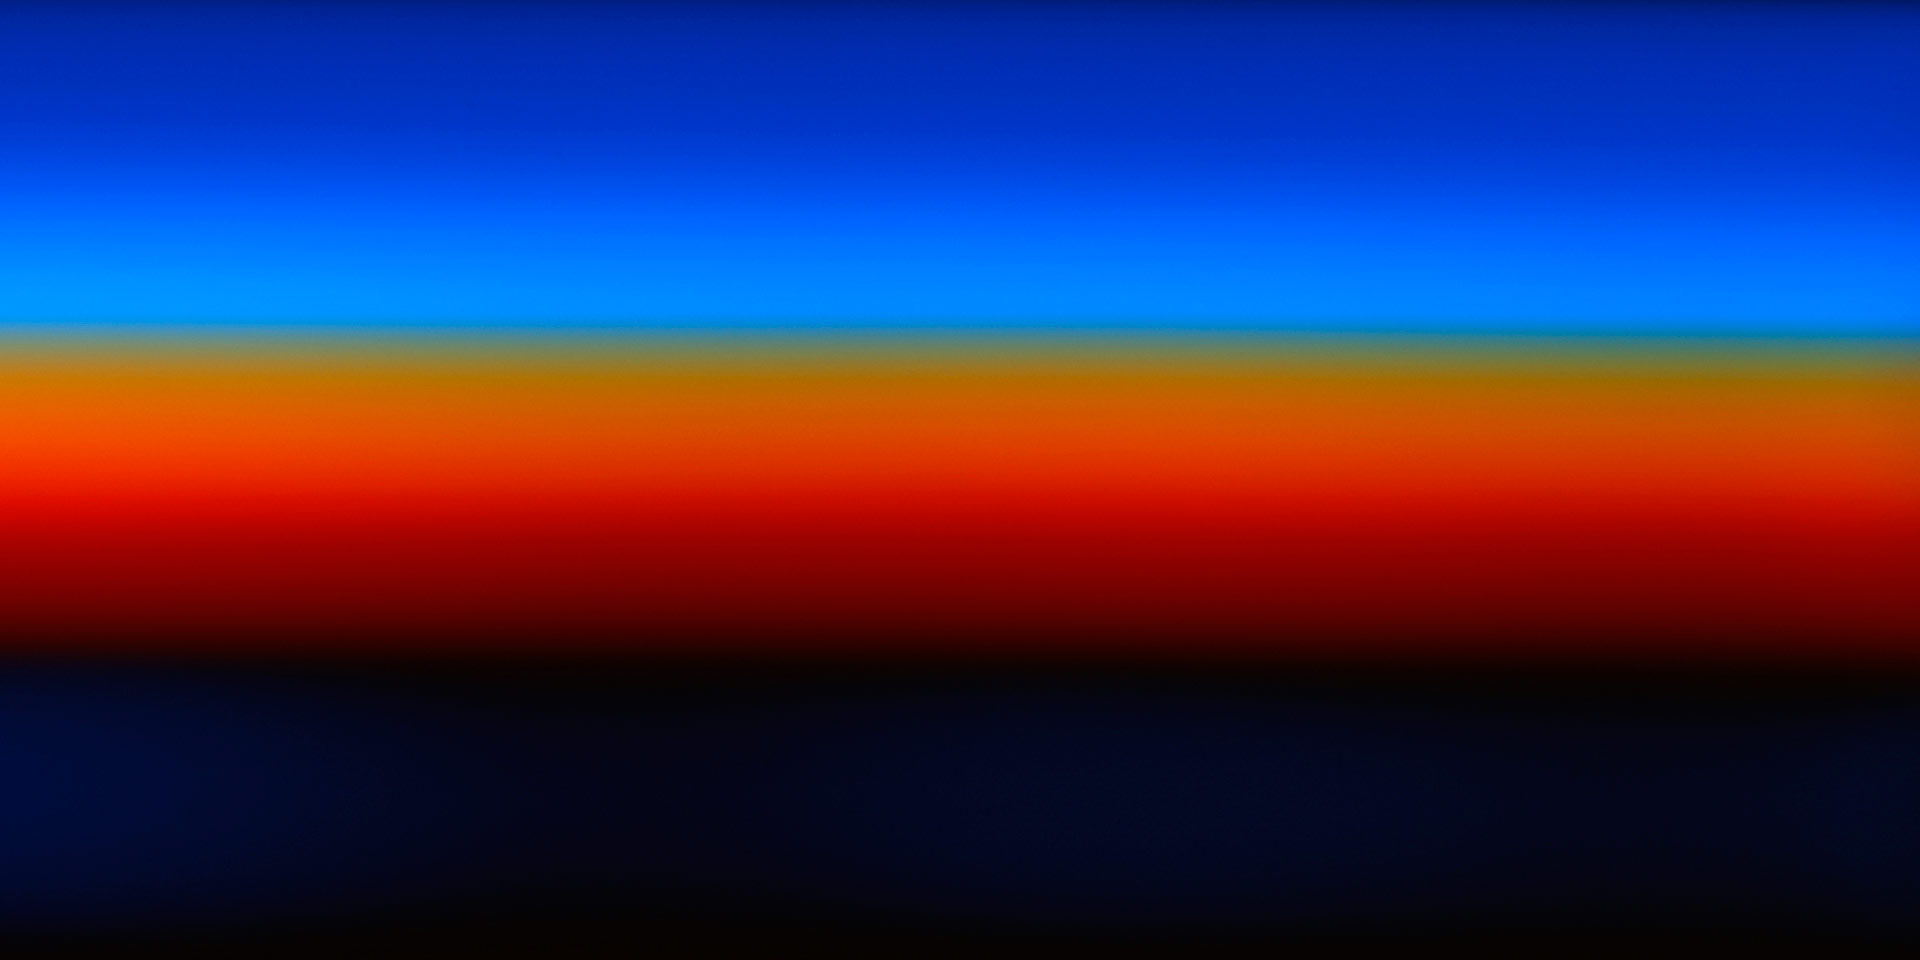 Emission Spectrum of Argon #1, 2011